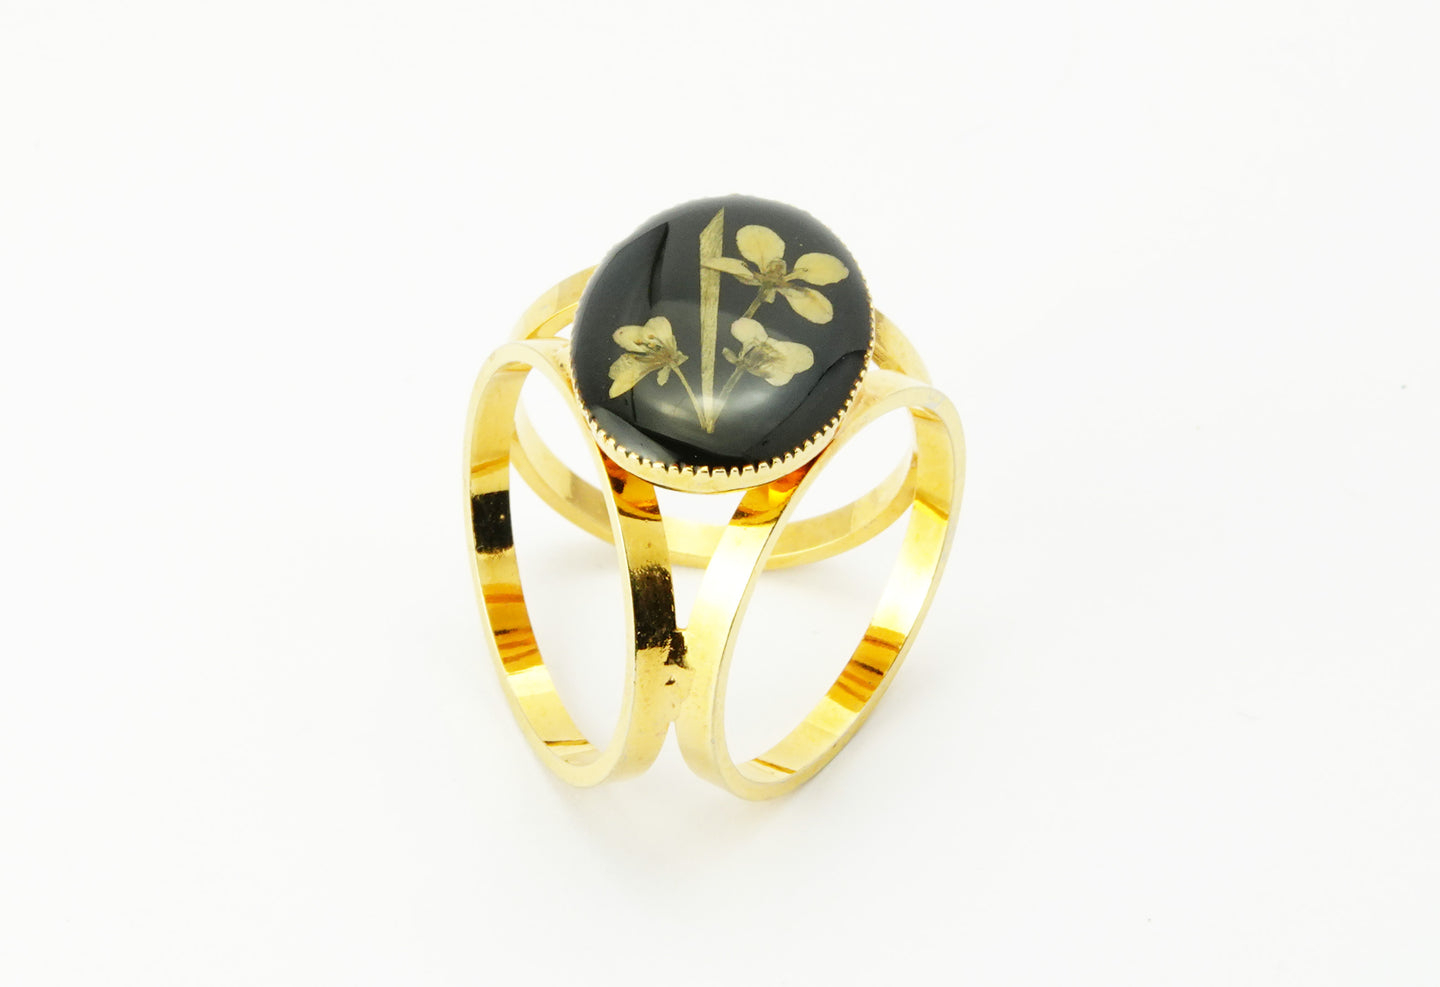 Vintage Gold Tone Black Enamel & Floral Scarf Ring - 3 Ring Scarf Ring - Vintage Scarf Clip